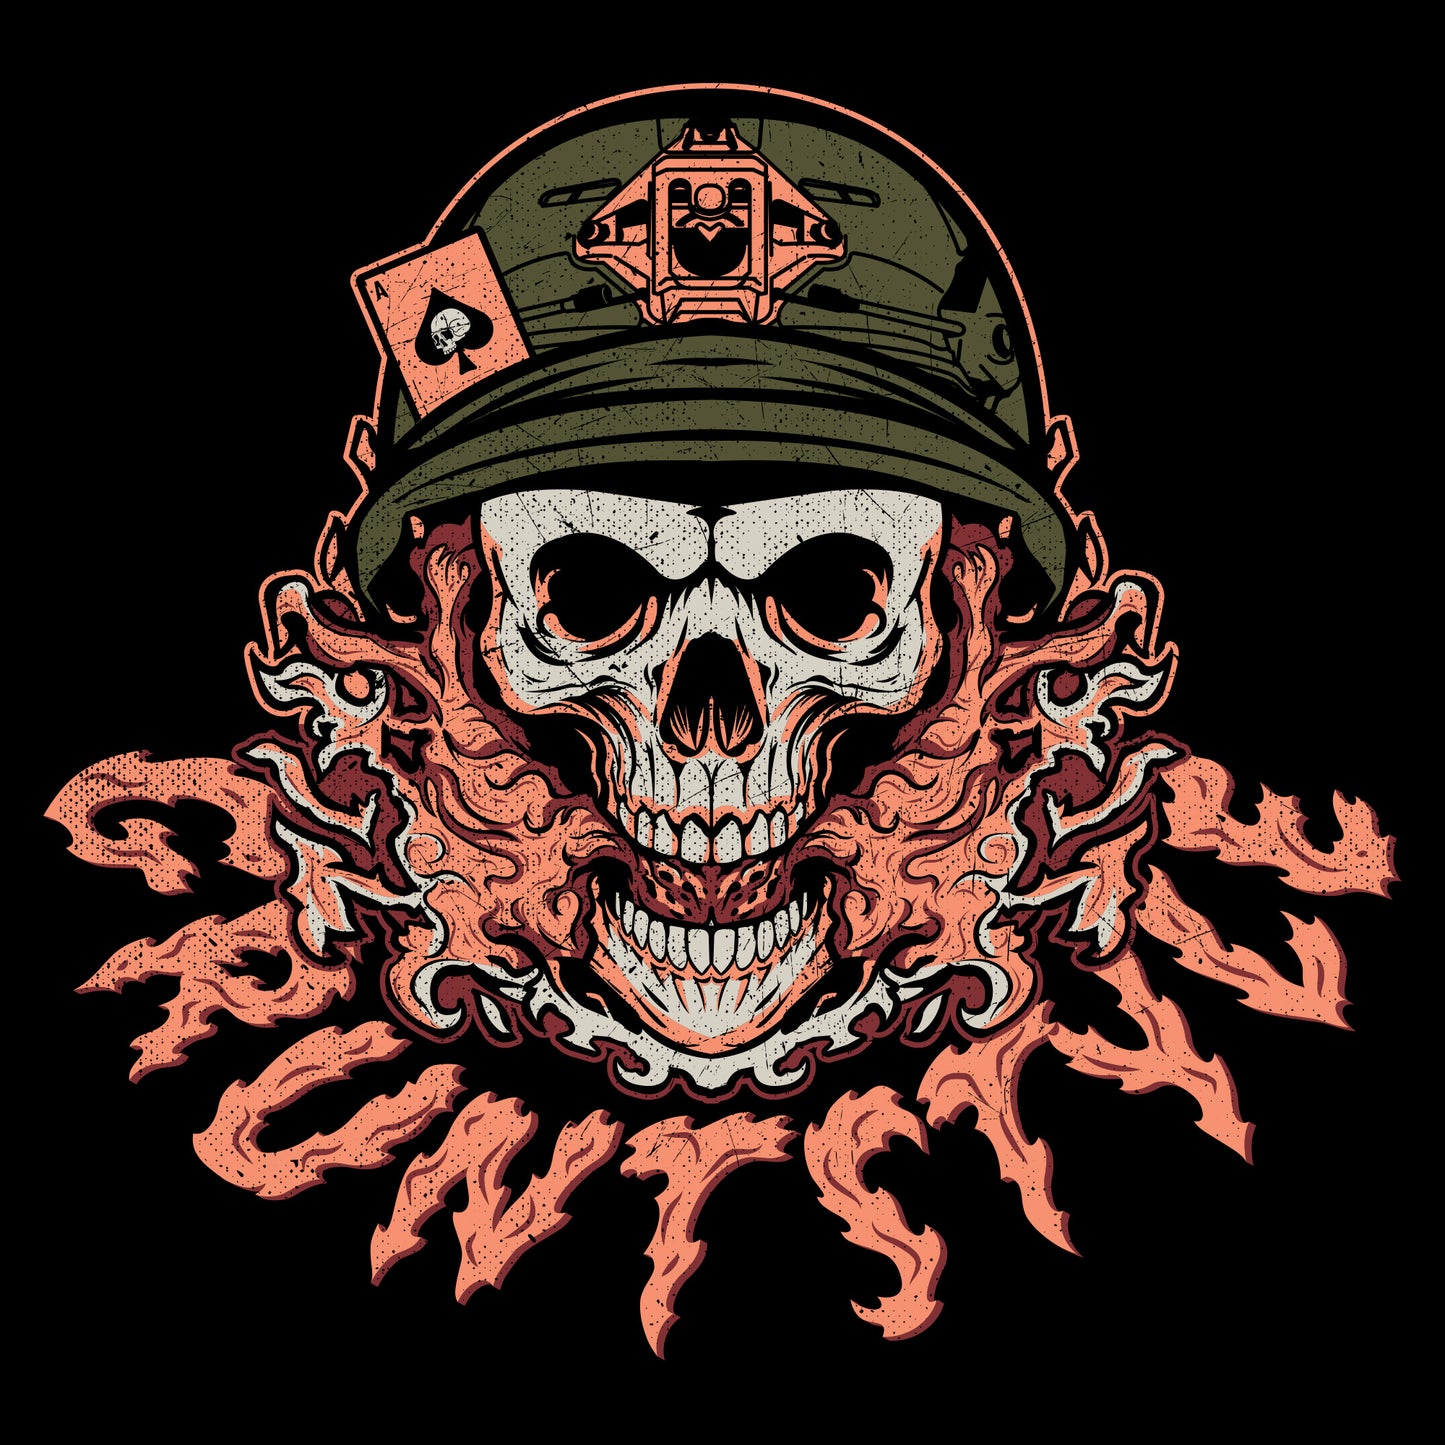 Skull Shirts - Patriotic Apparel 